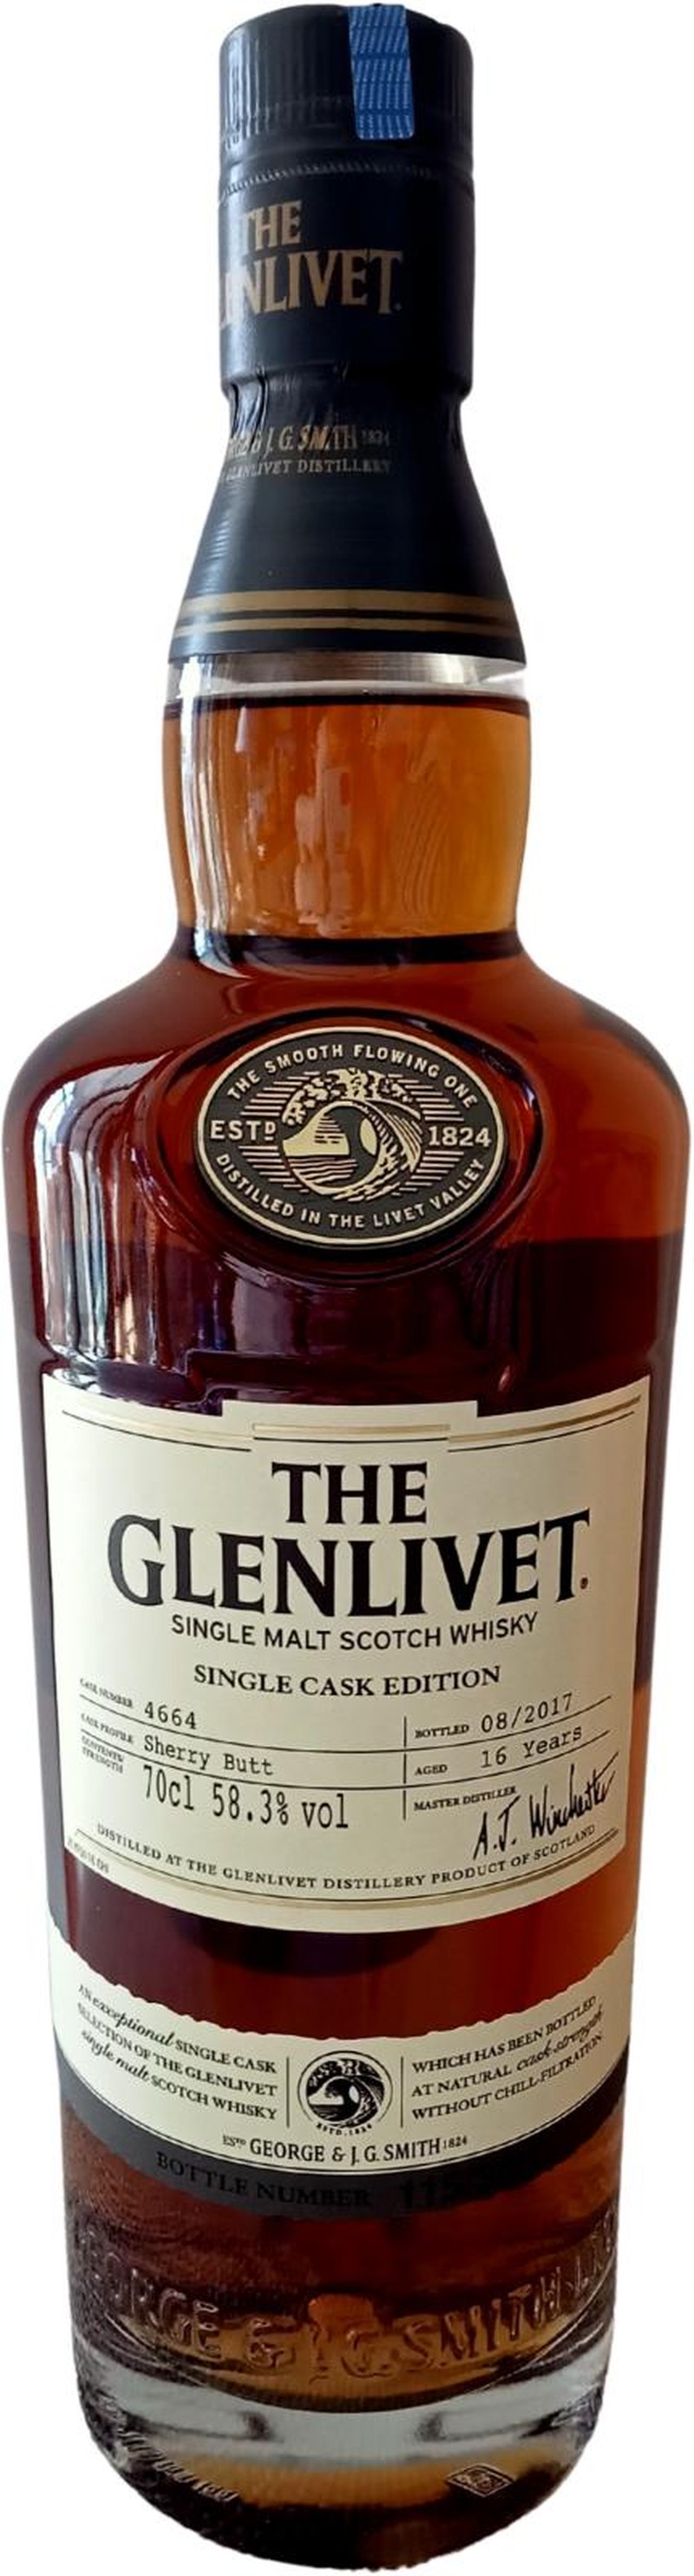 THE GLENLIVET 16 YRS SHERRY BUTT SINGLE MALT 750ML